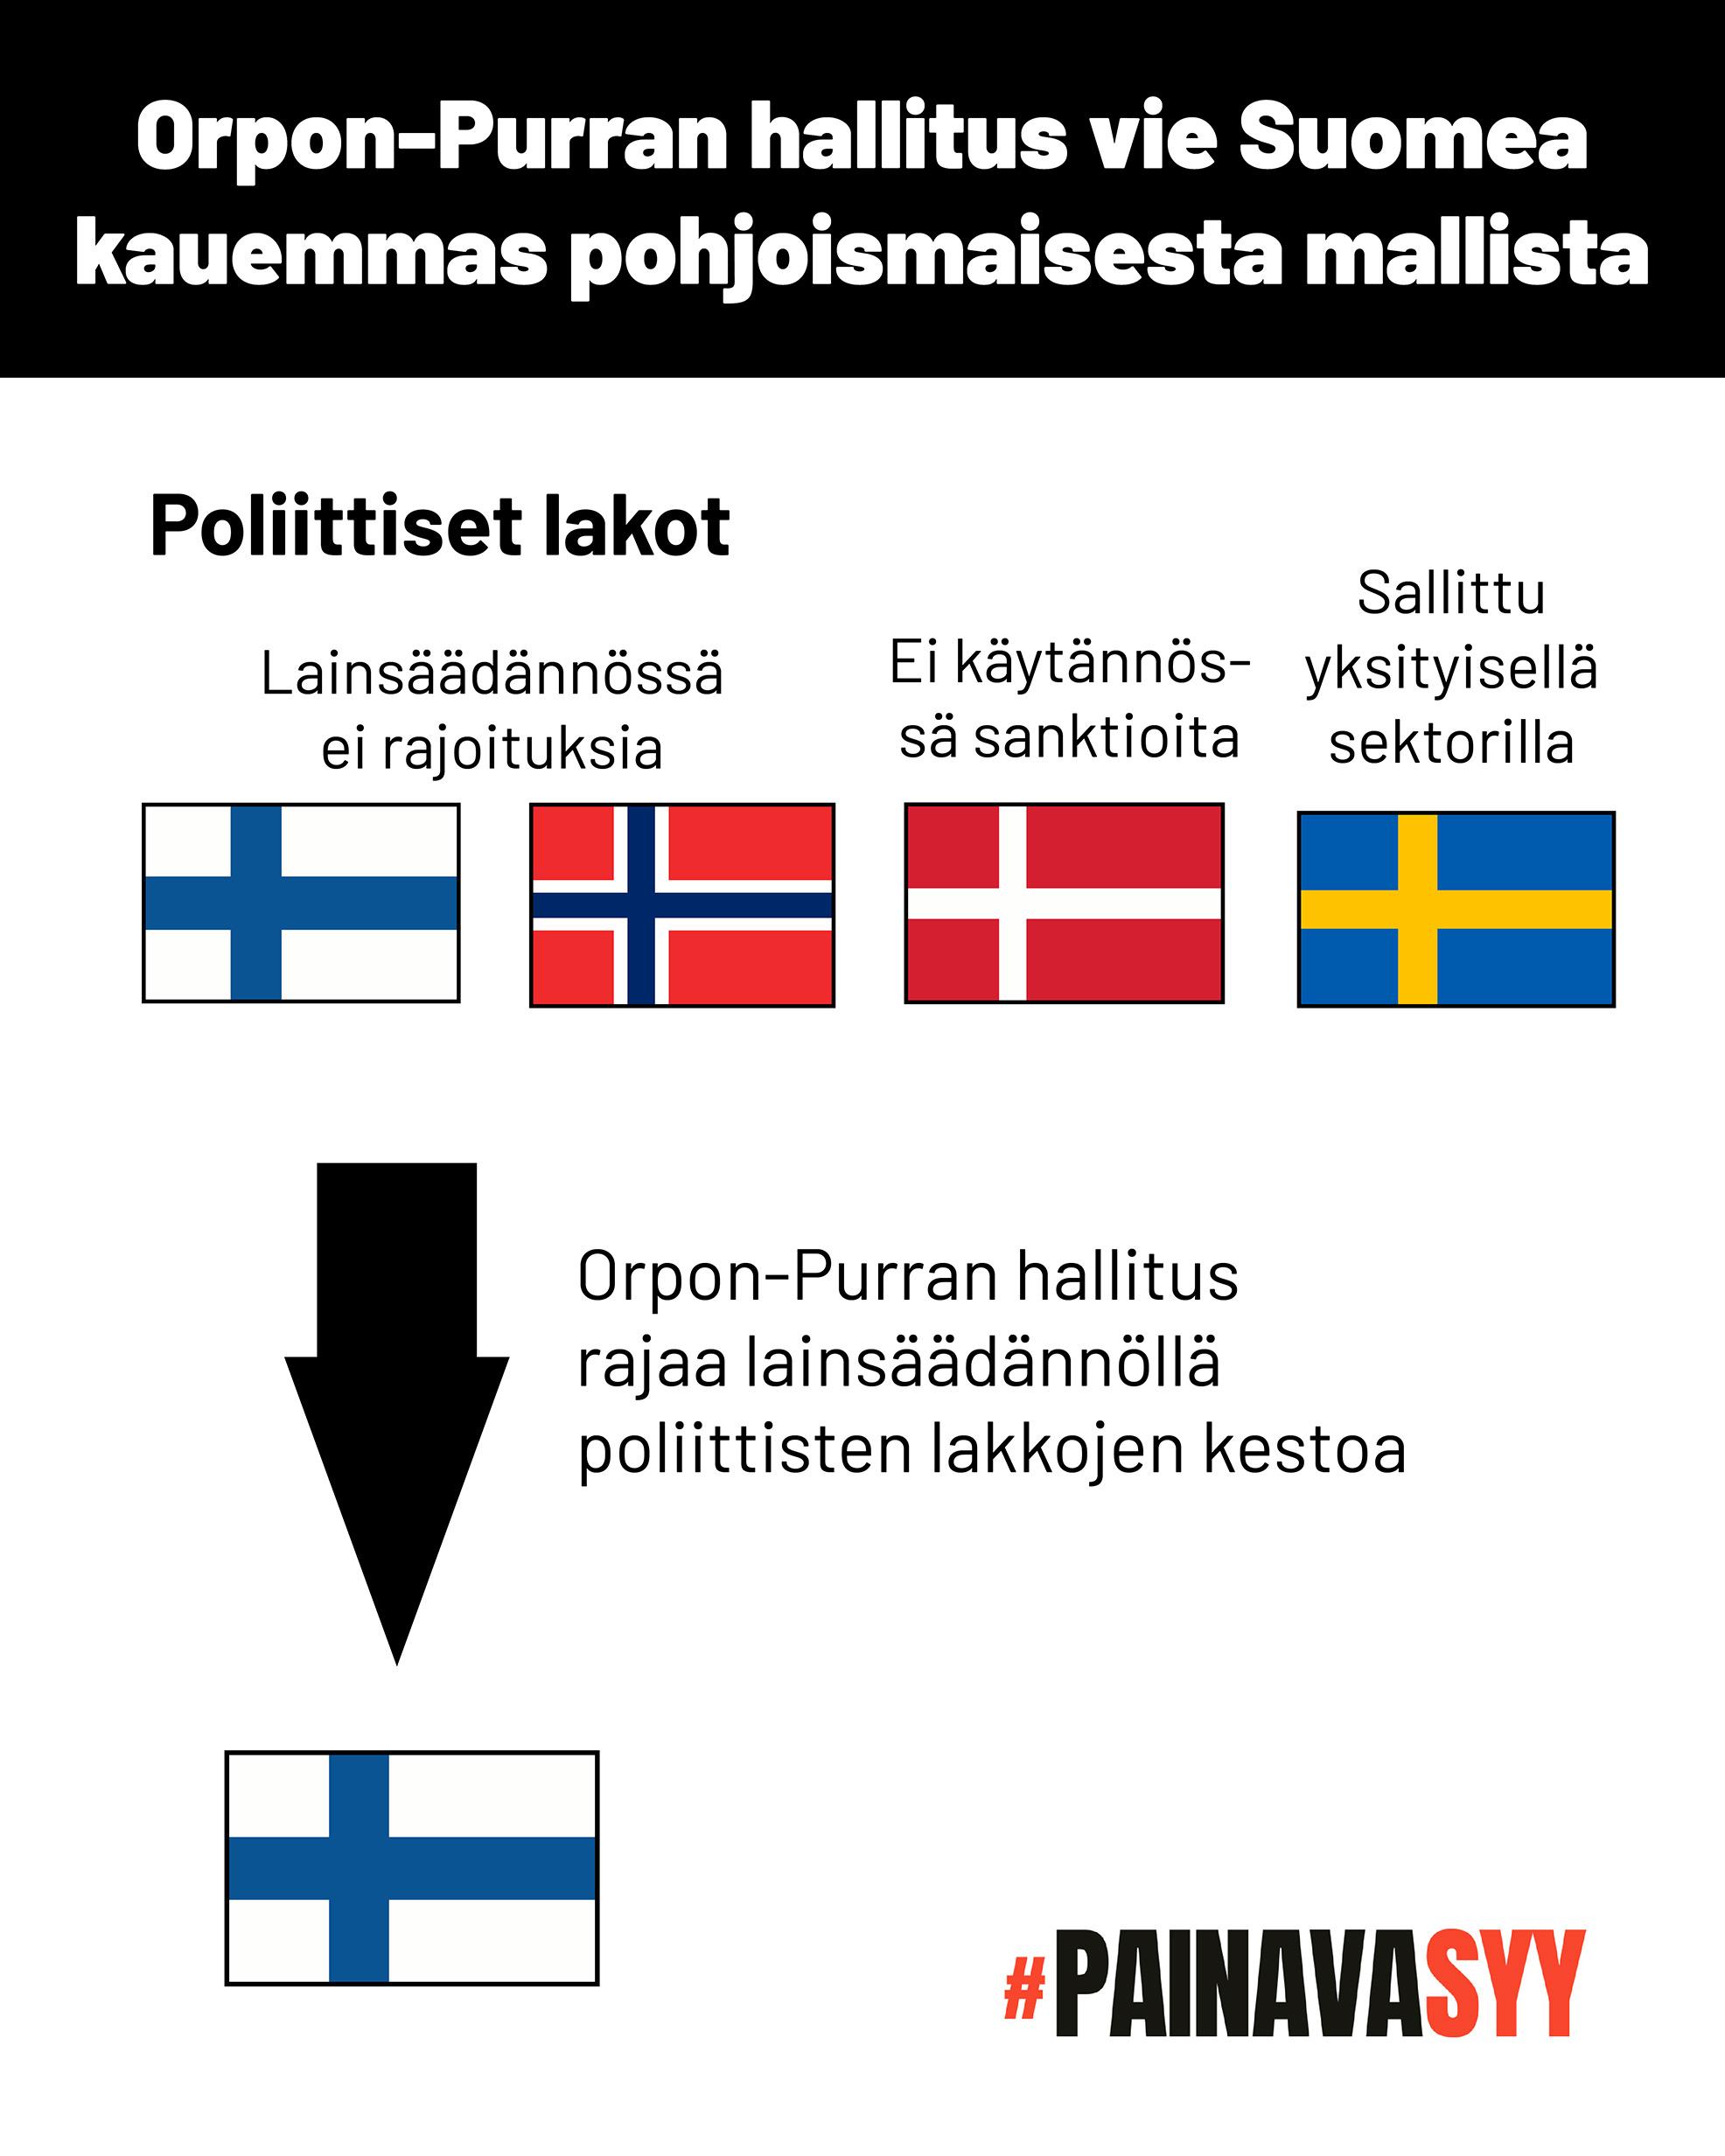 Kaavio osoittaa, että nyt Suomen ja Norjan lainsäädännössä ei ole poliittisia lakkoja koskevia rajoituksia, Tanskassa niistä ei käytännössä seuraa sanktioita ja Ruotsissa ne on sallittu yksityisellä sektorilla. Orpon-Purran hallitus rajaa lainsäädännöllä poliittisten lakkojen kestoa.